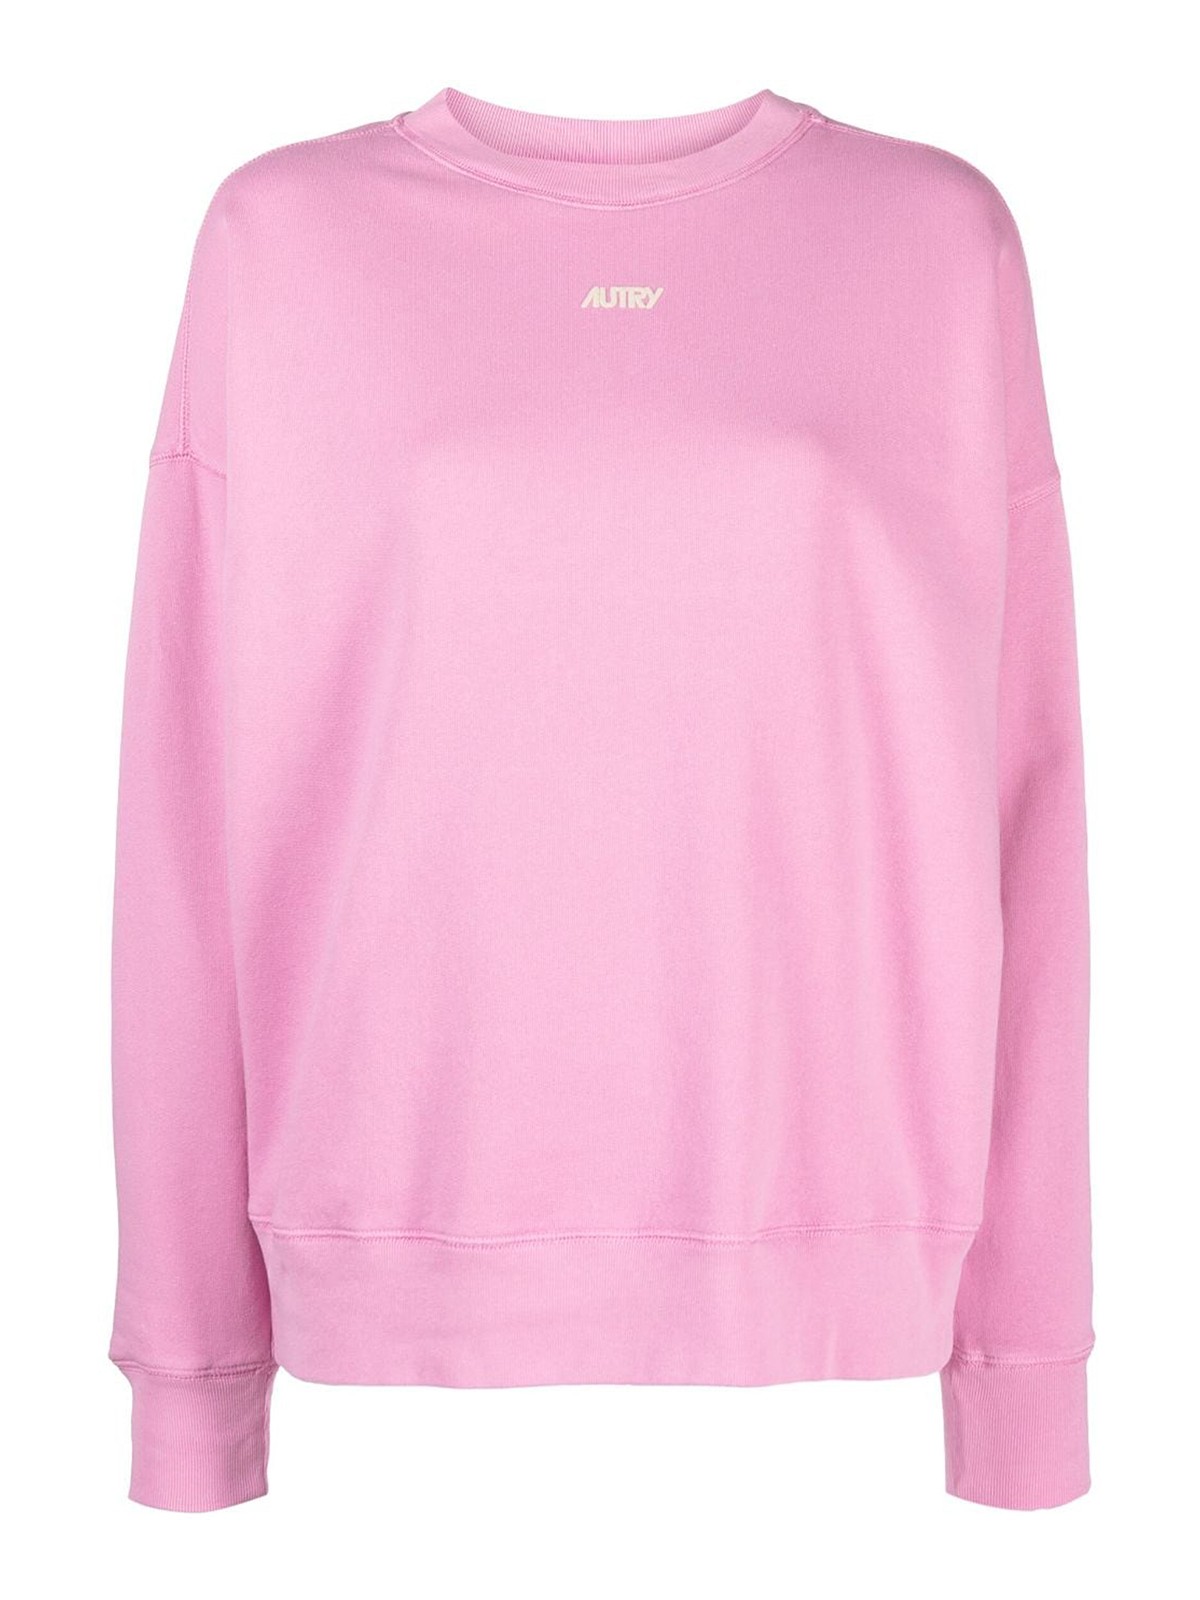 Autry Sweatshirt Bicolor Wom In Pink